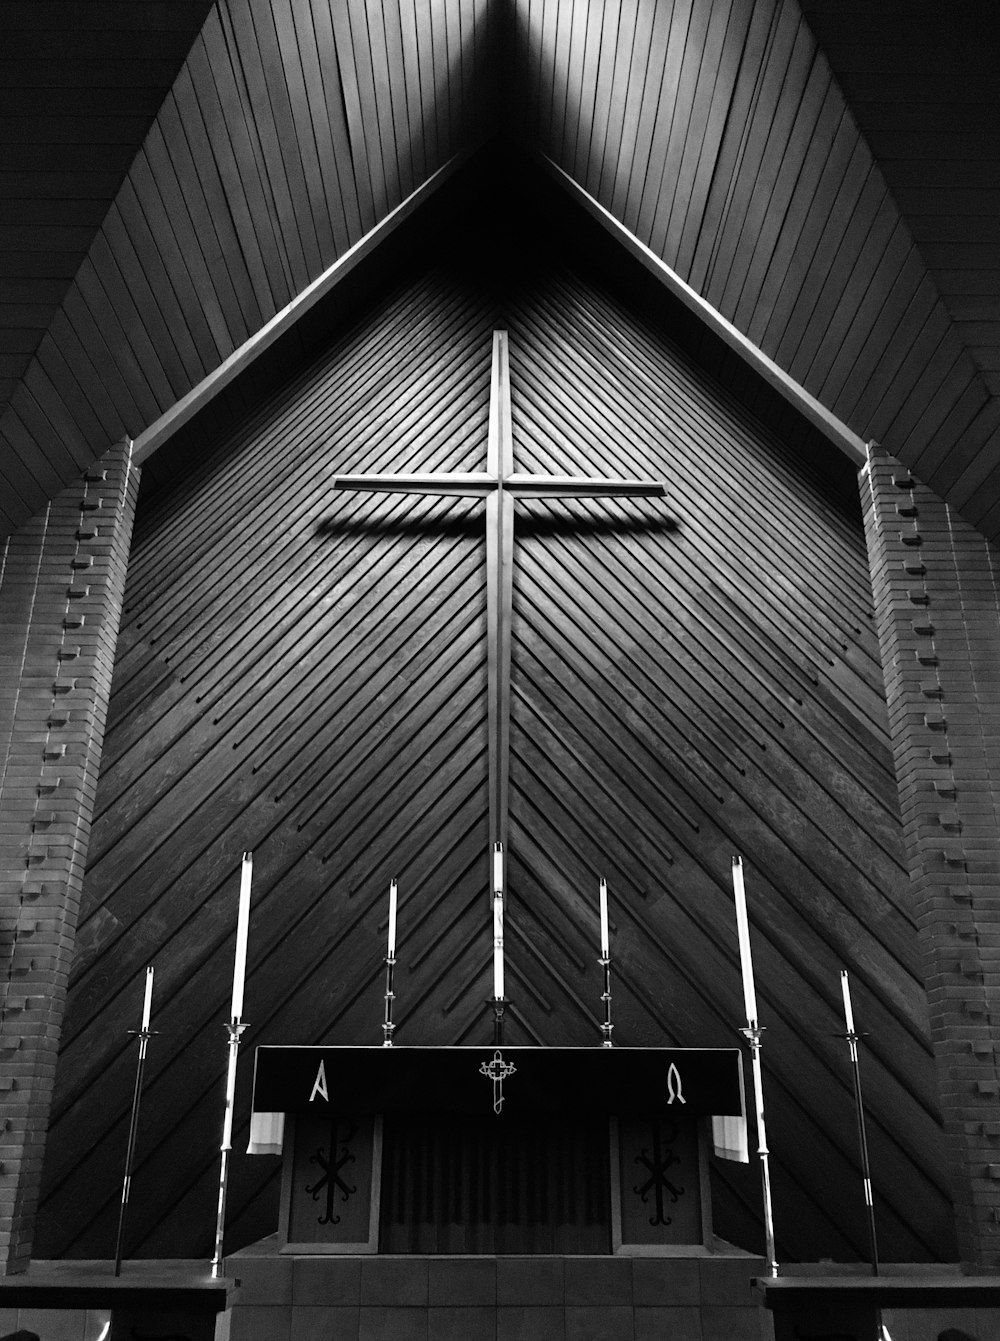 Photographie en niveaux de gris de l’autel de l’église